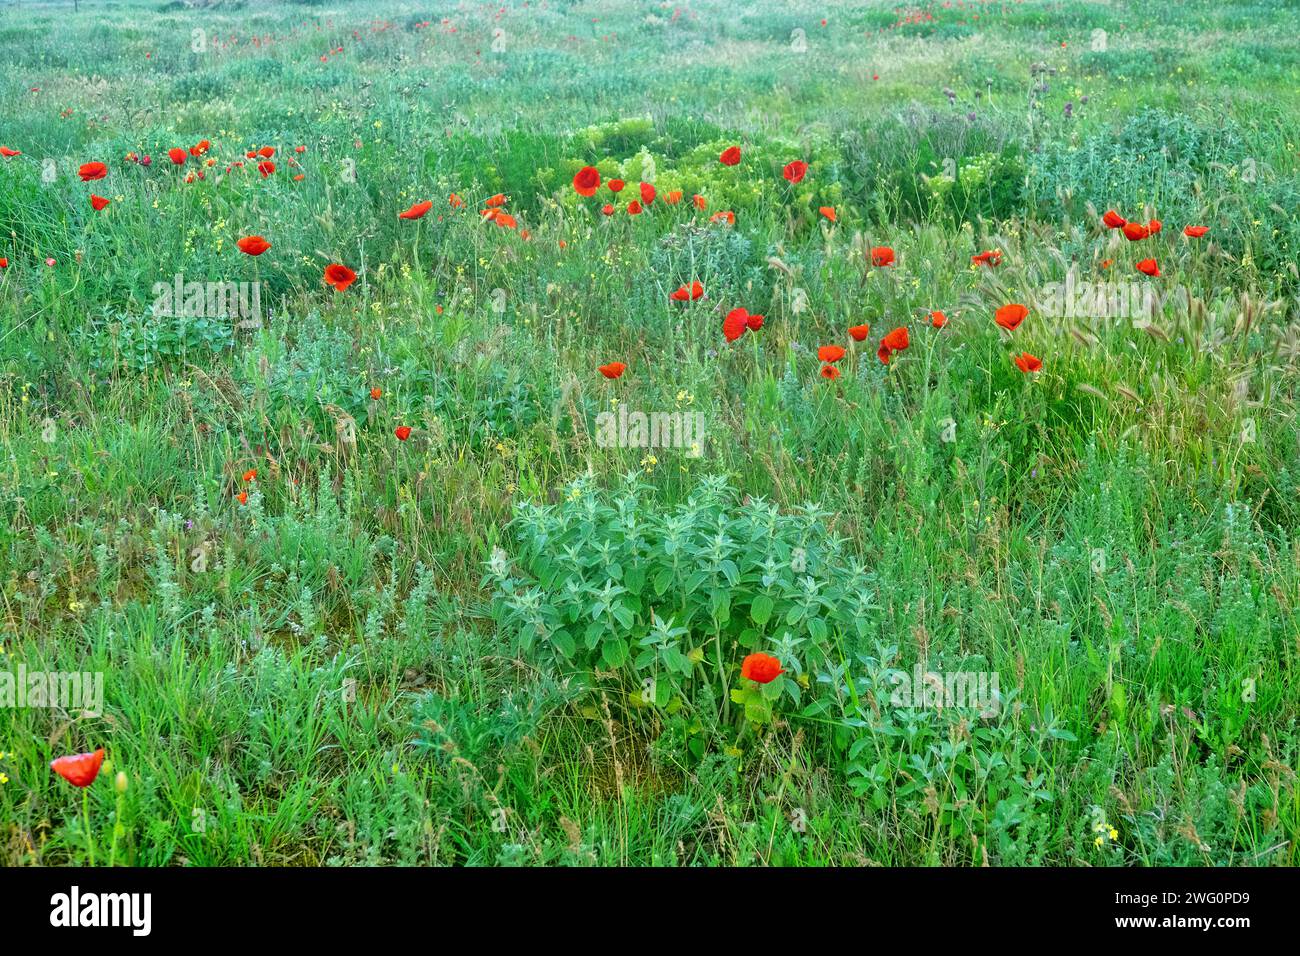 Steppe an der Küste, bepflanzte Dünen. Arabatskaja strelka. Getreide, Salbei (Salvia - große Laubpflanze im Vordergrund), roter Mohn (Papaver Rhoeas), Durchhang Stockfoto